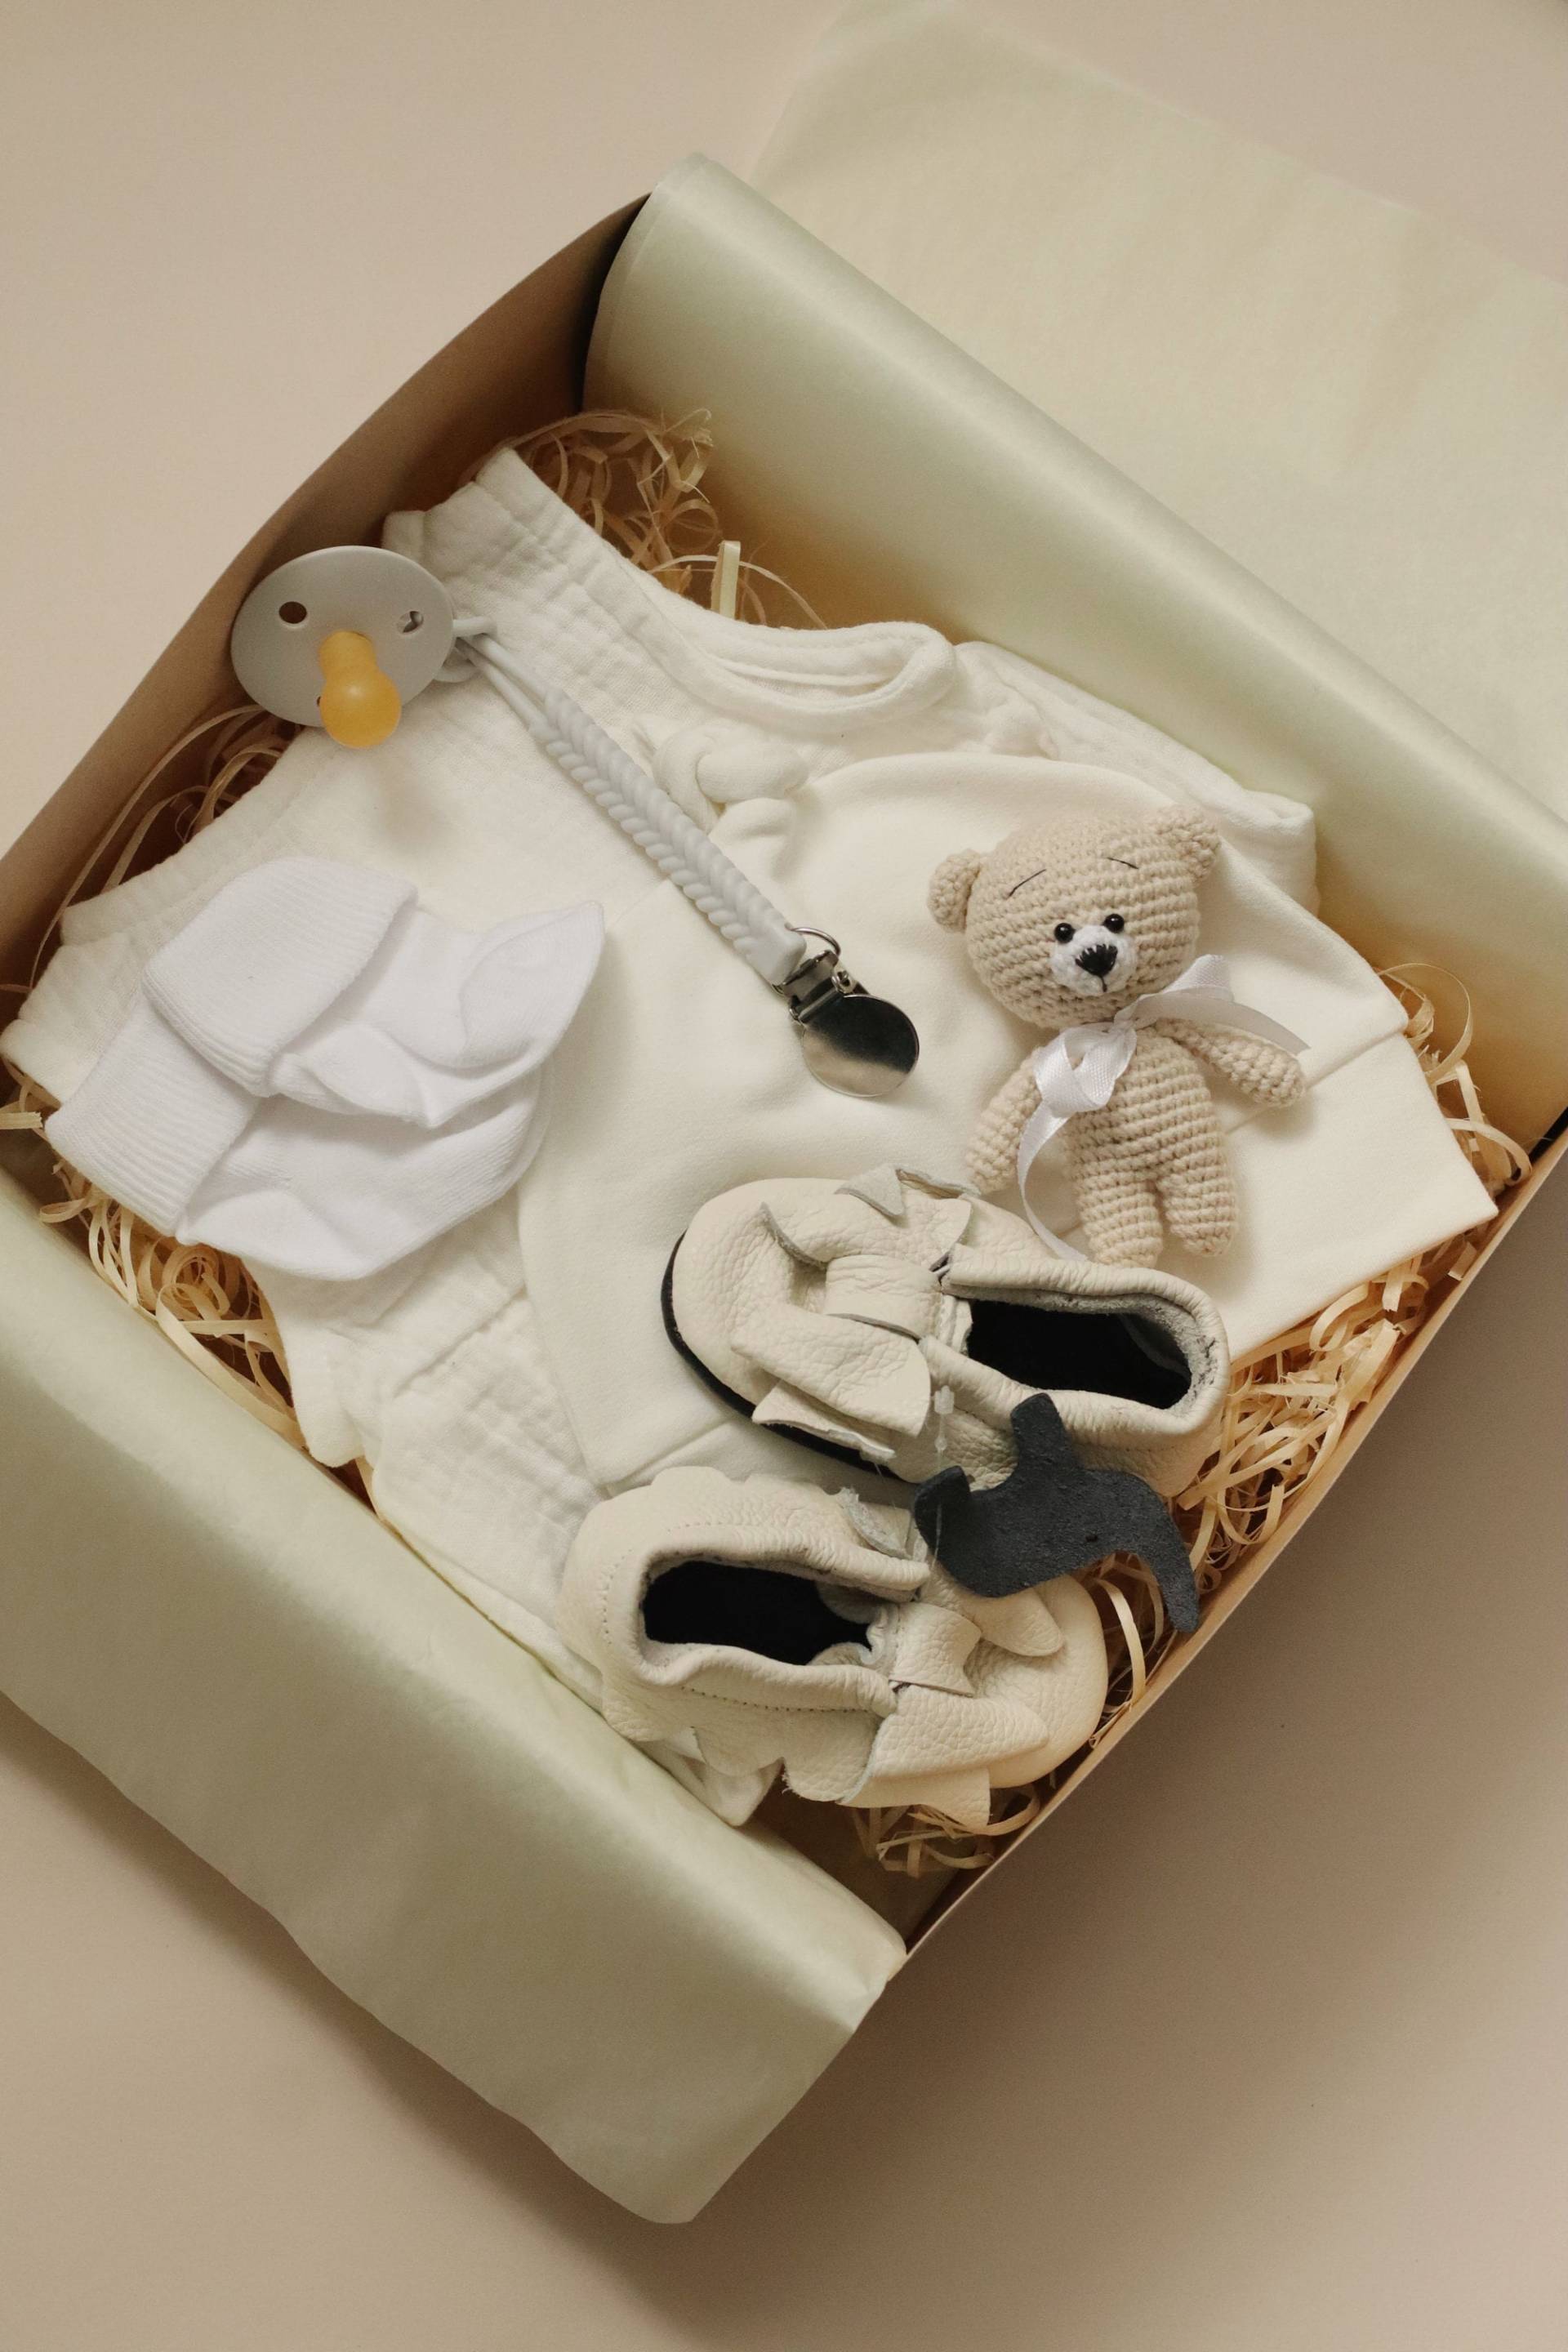 Neugeborenen Geschenkkorb - Willkommen Geschenk Set Neugeborene Baby Mädchen Geschenkbox Werdende Mama Shower Weiße Box von RipkaStore